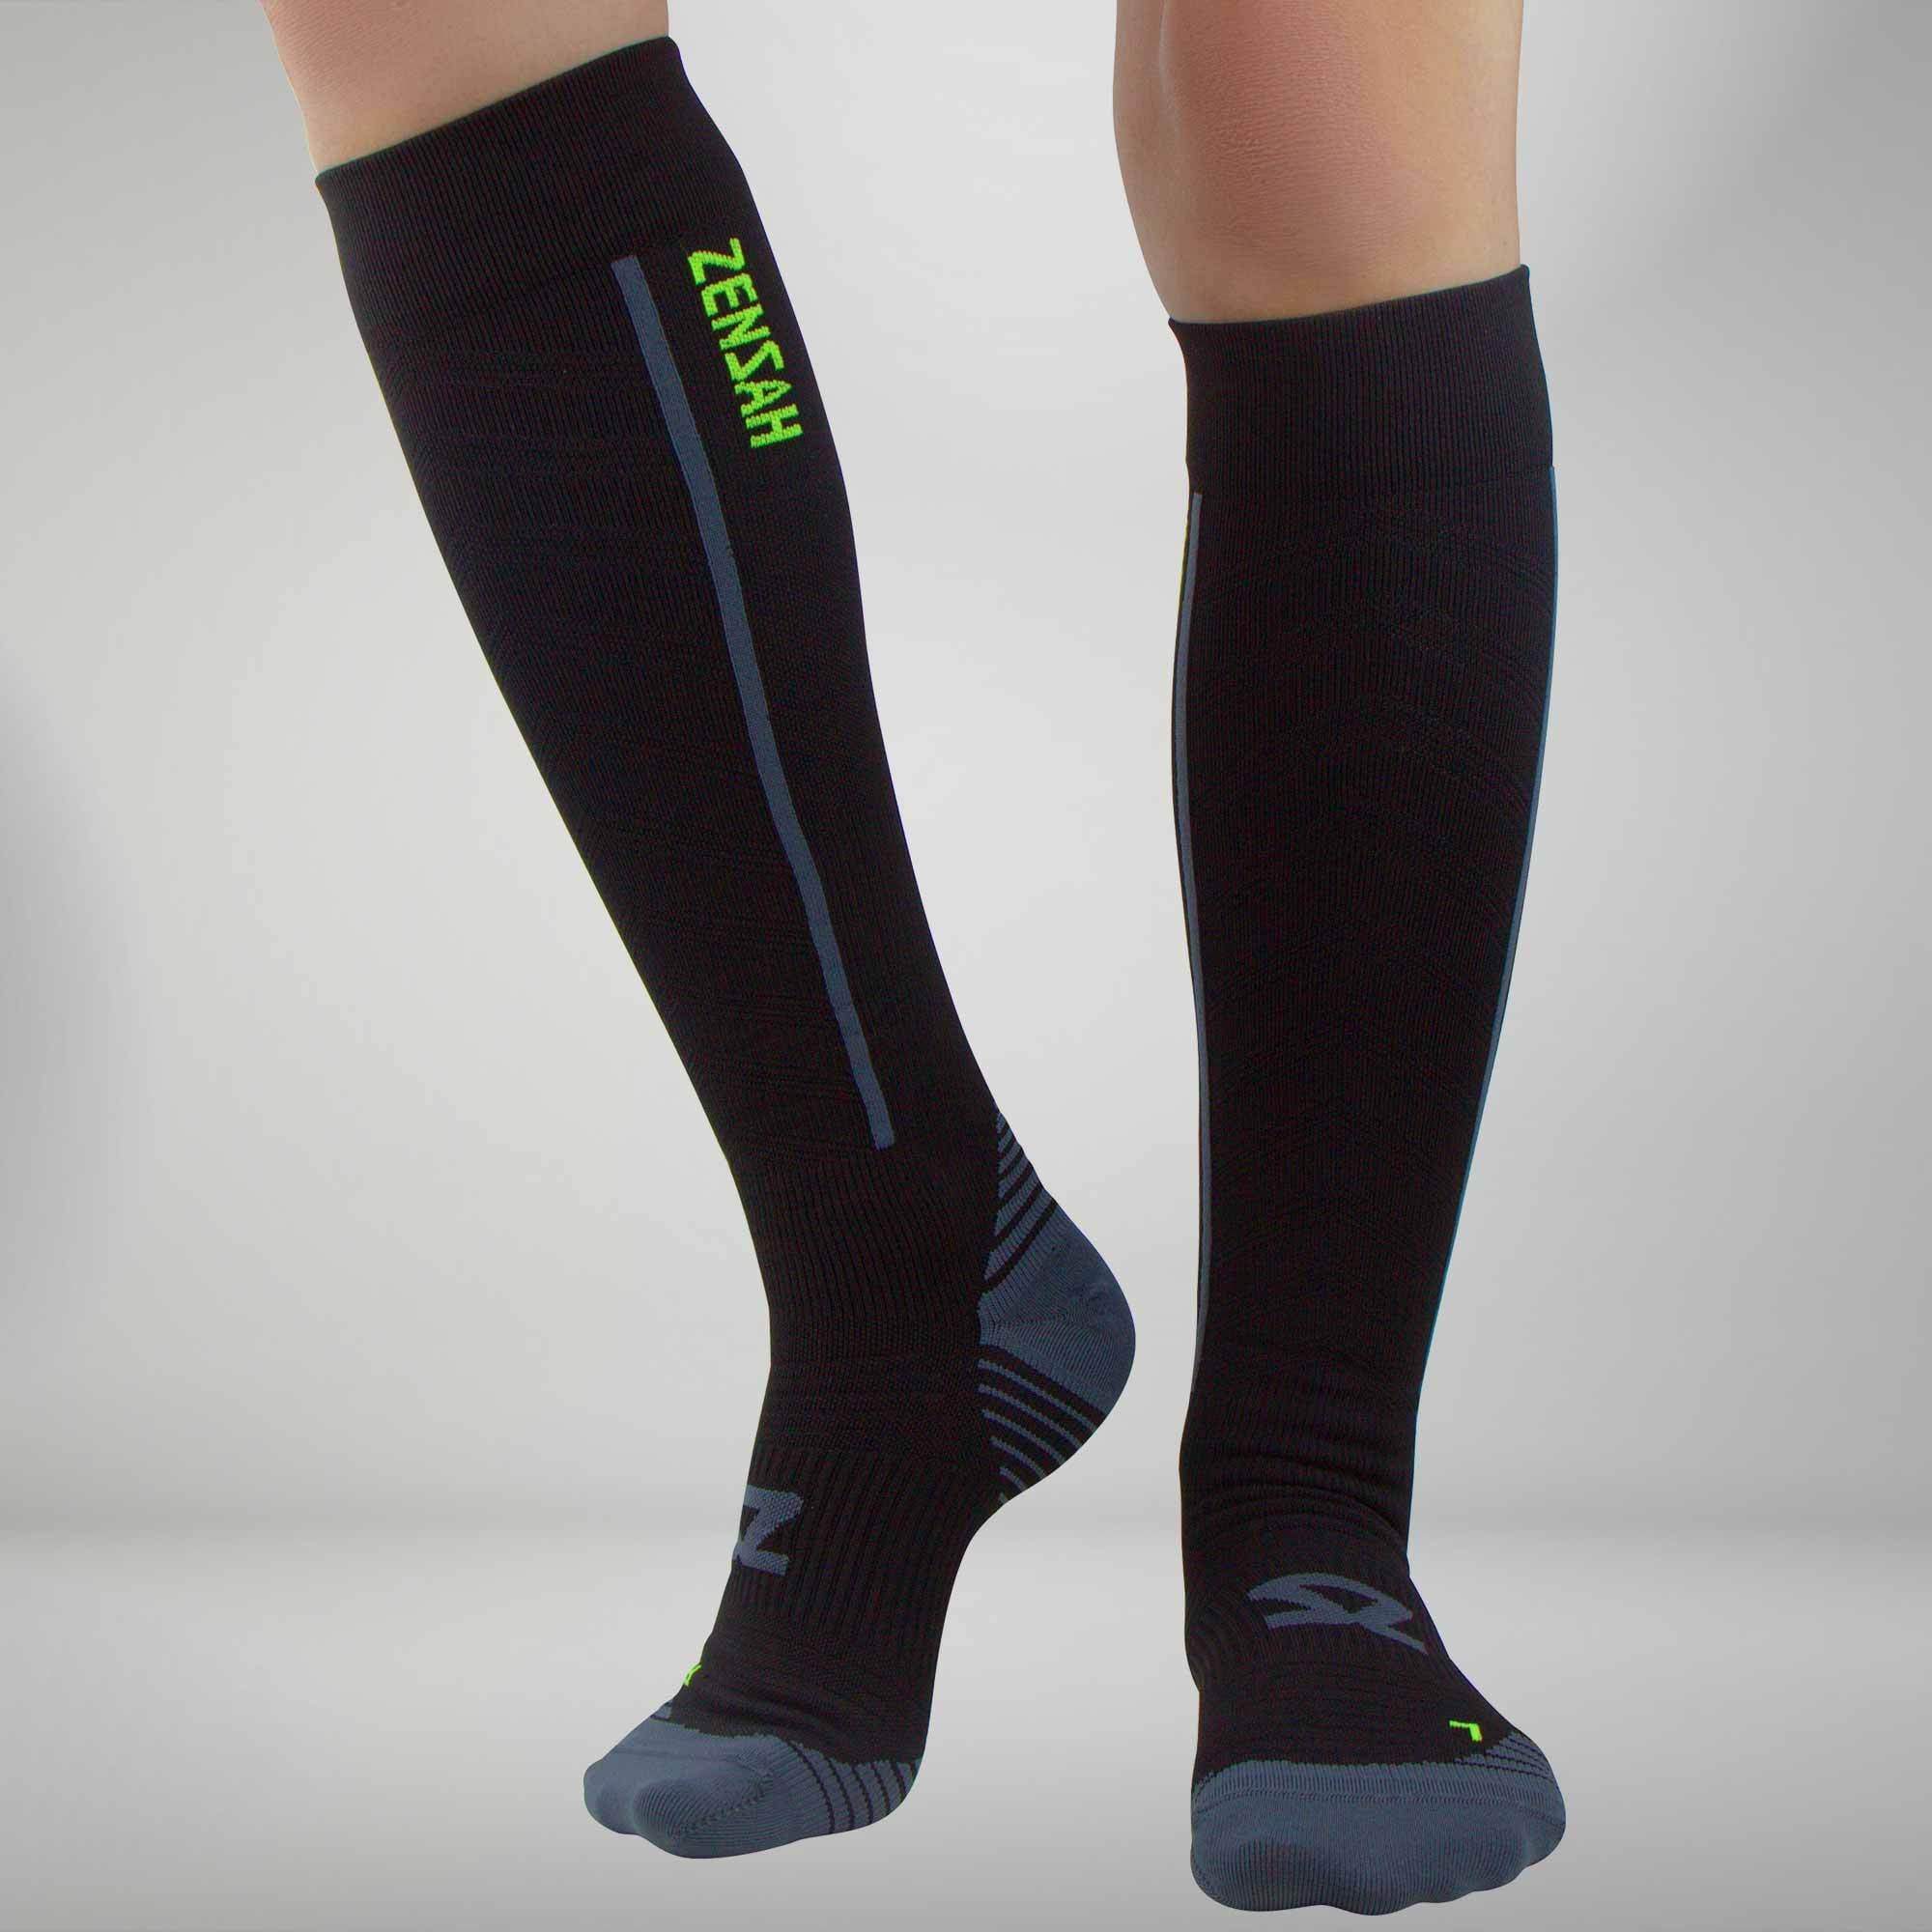 Hurtig medaljevinder element Zensah compression sock - The Running Well Store